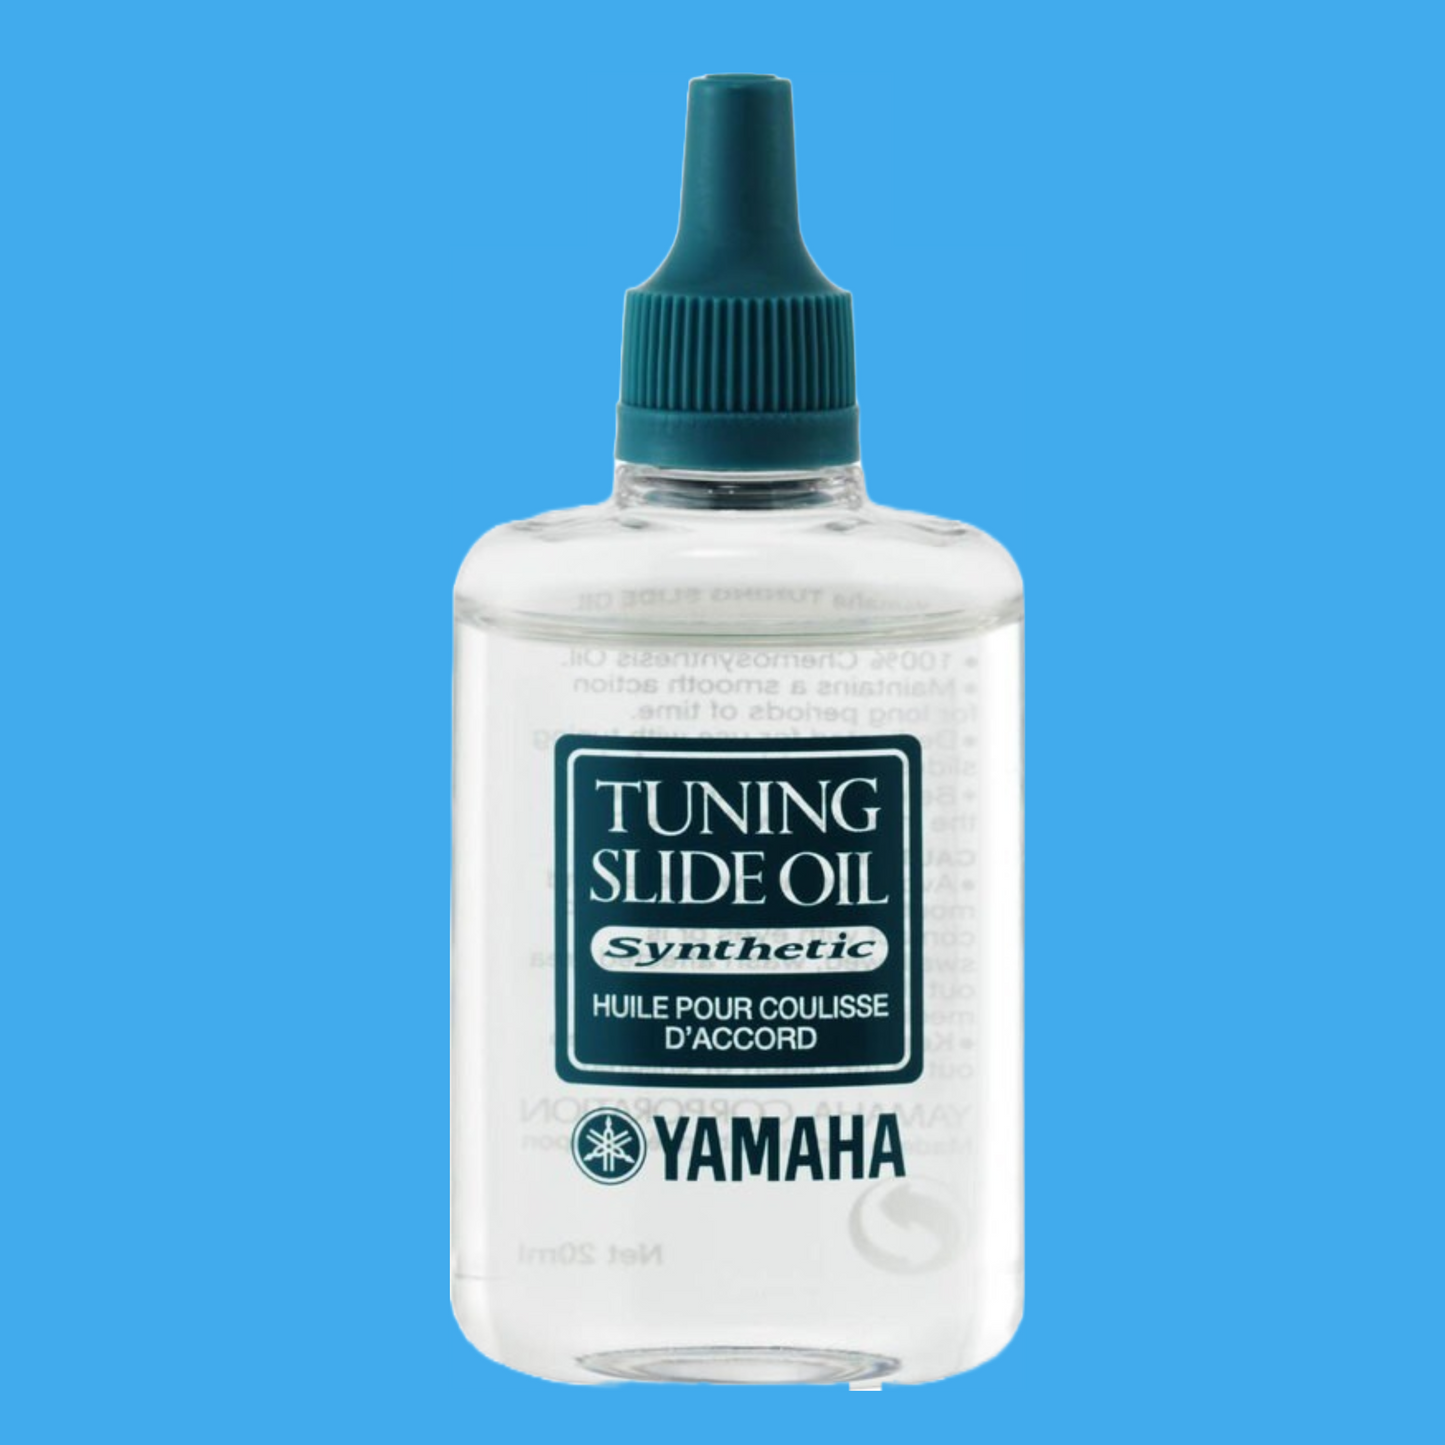 Yamaha Tuning Slide Oil (20ml Bottle)